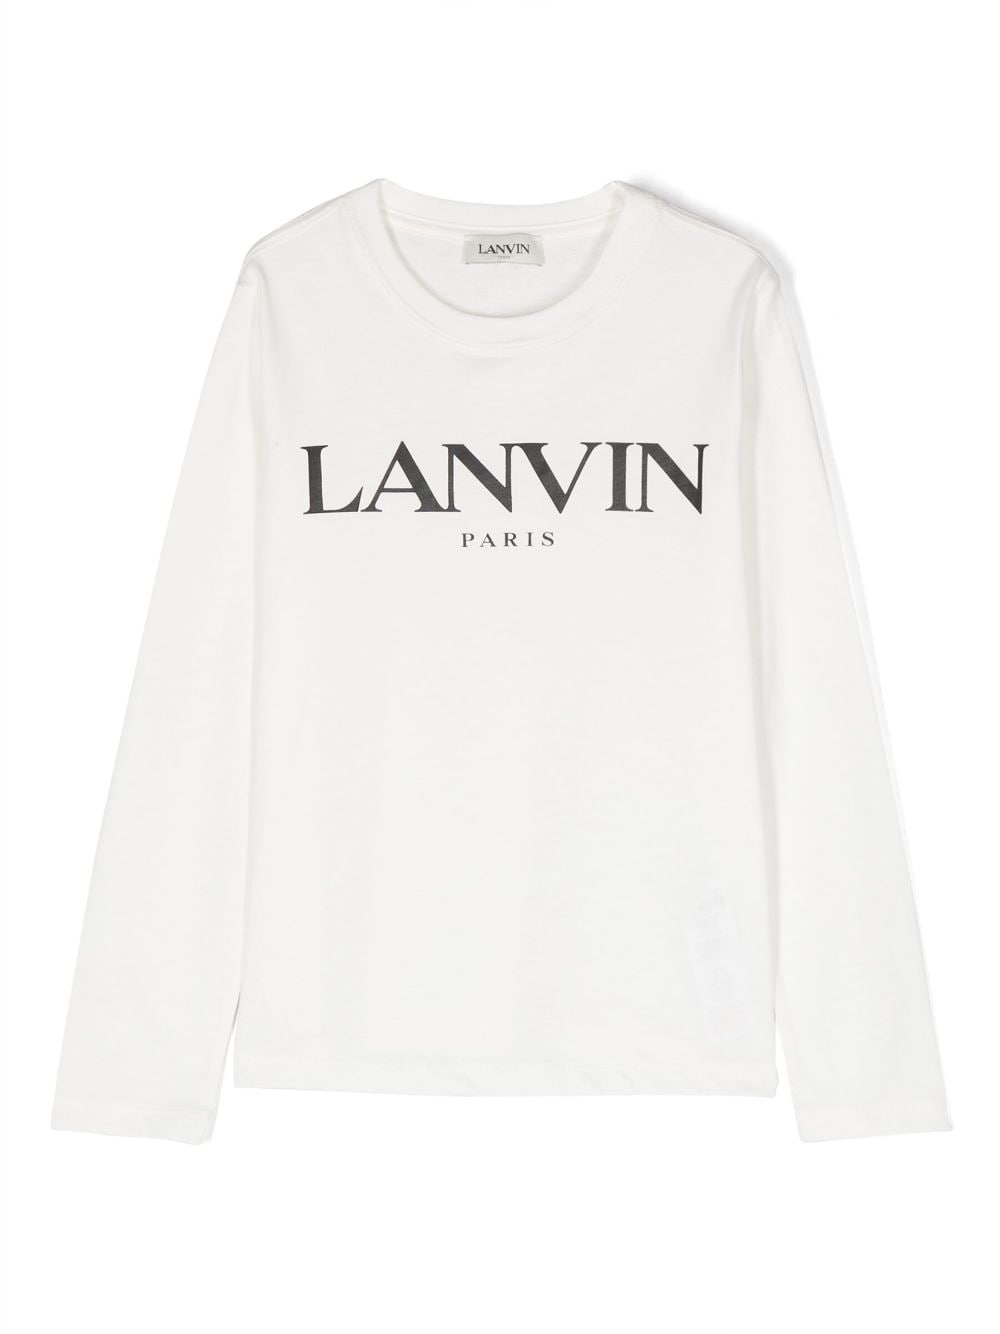 White cotton jersey boy LANVIN t-shirt